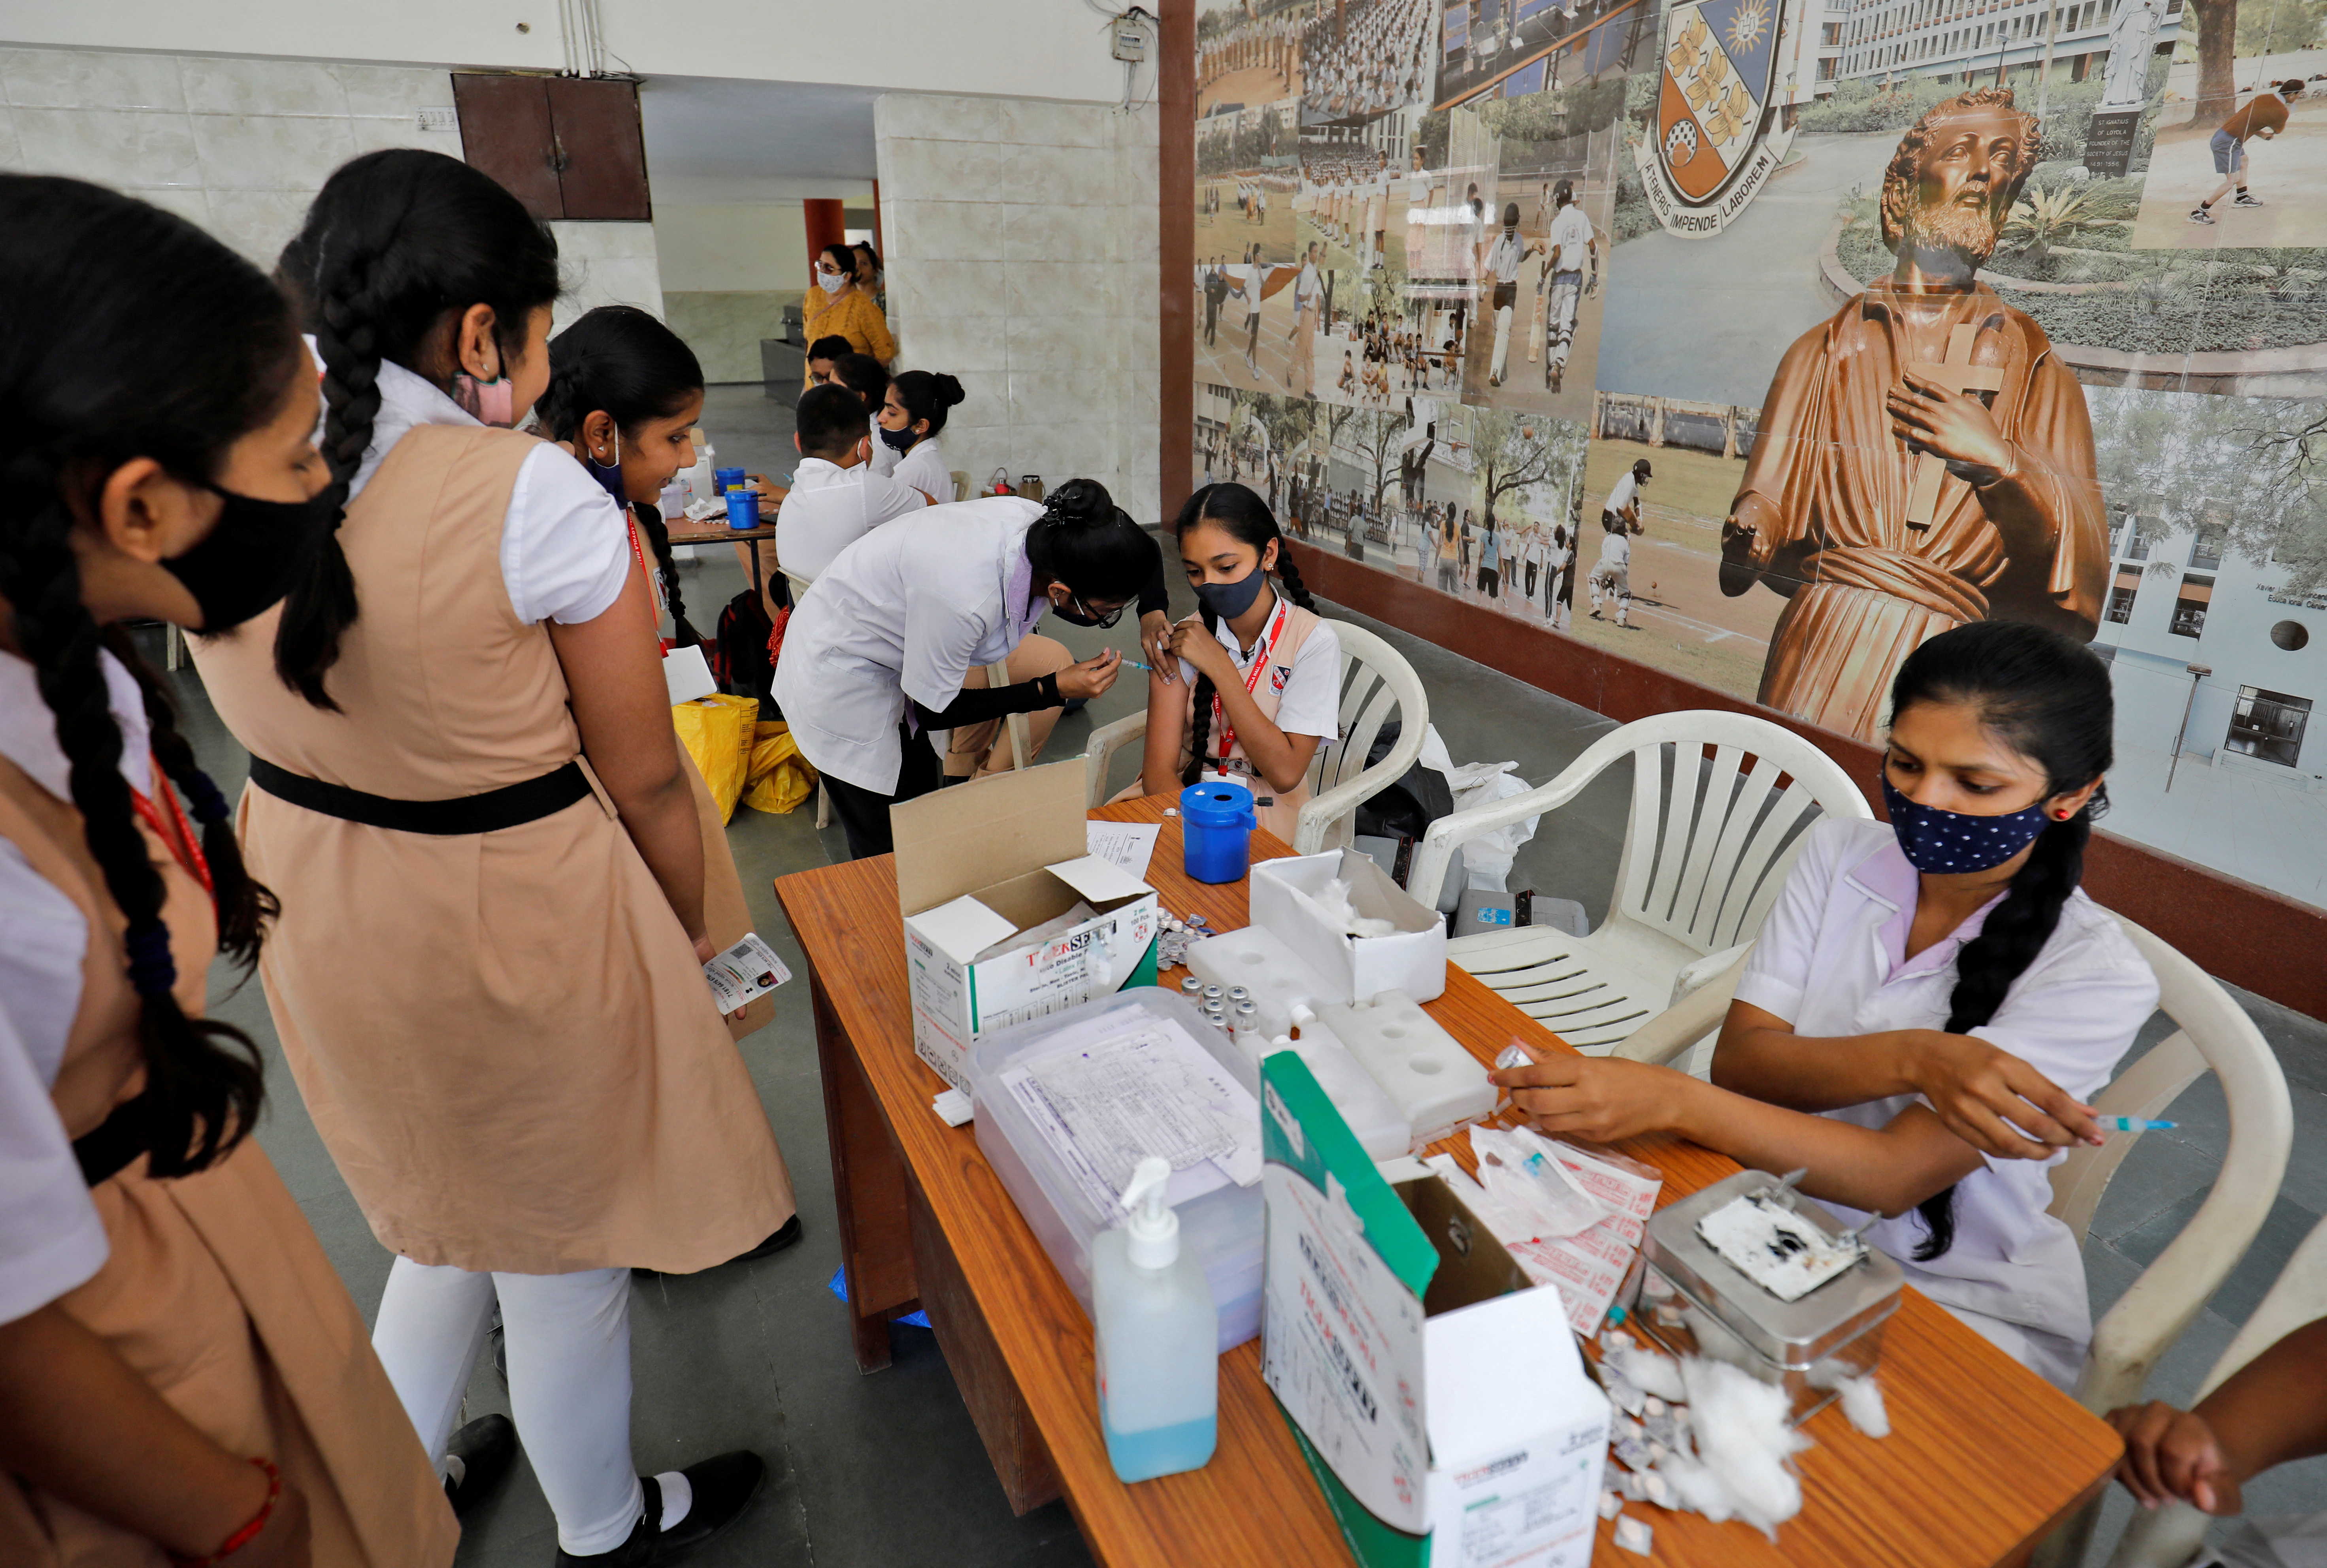 En la India se aplicaron más de 70 millones de dosis de la vacuna CORBEVAX en adolescentes. Es una vacuna de bajo costo y no tiene patente (REUTERS/Amit Dave)